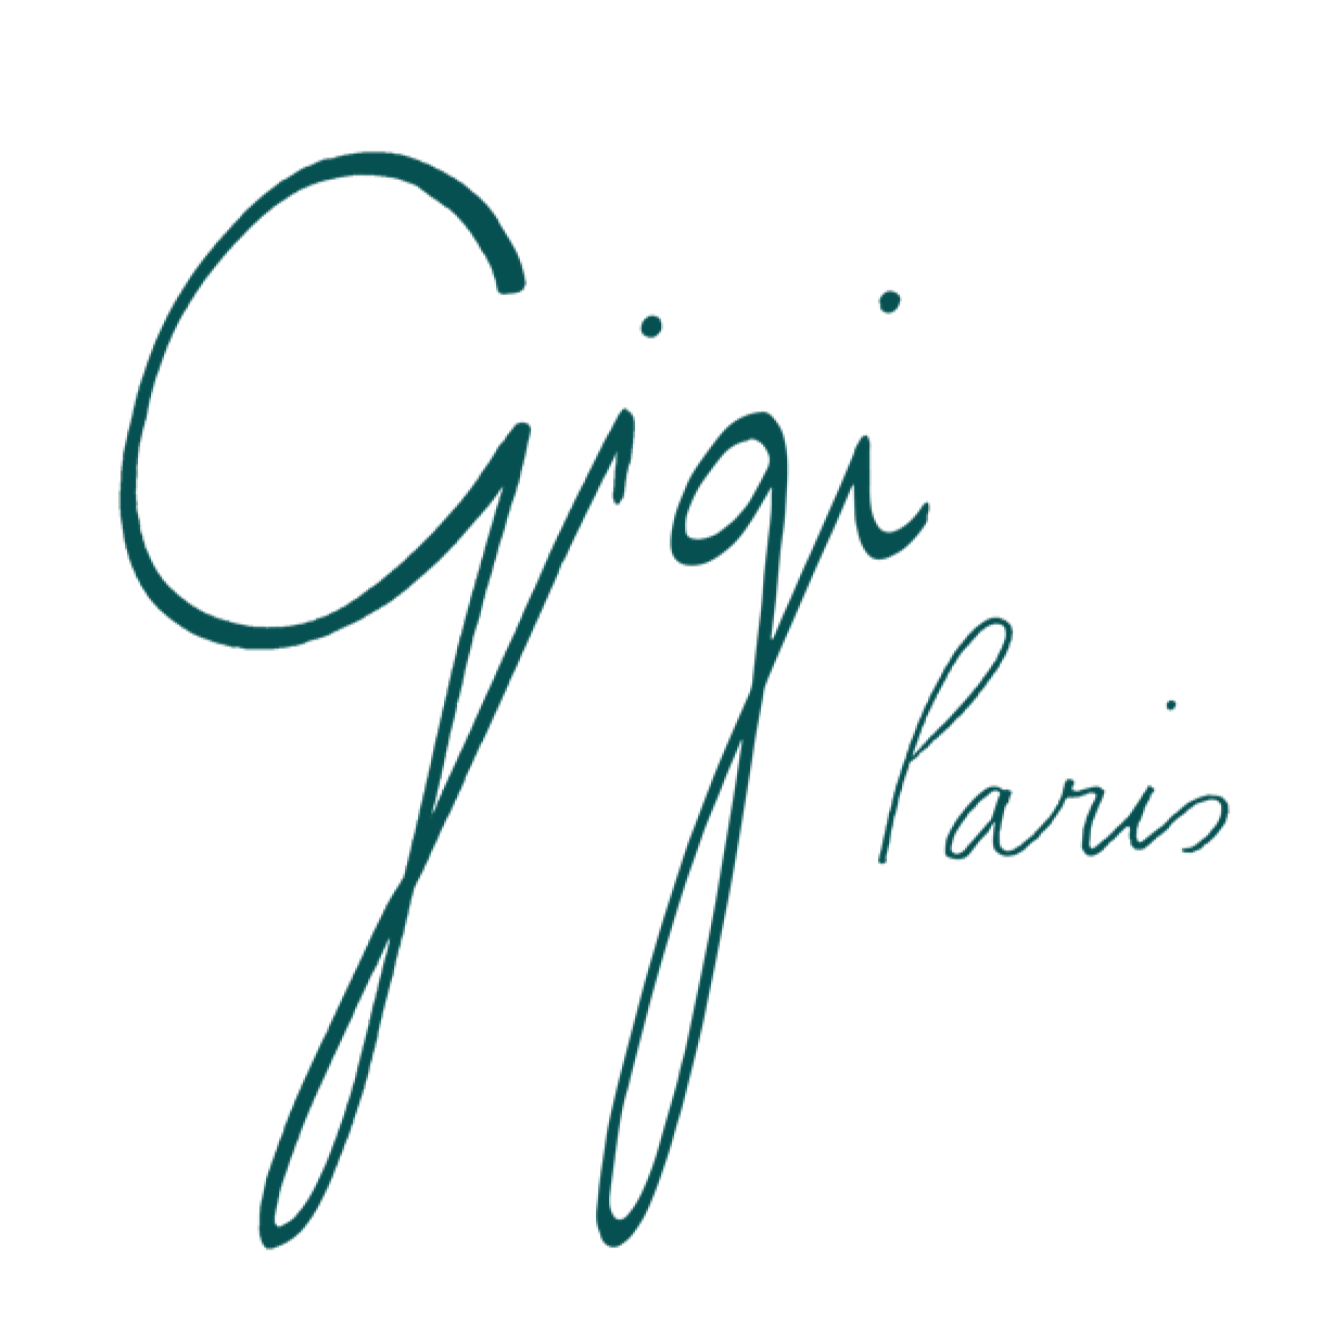 Gigi Paris